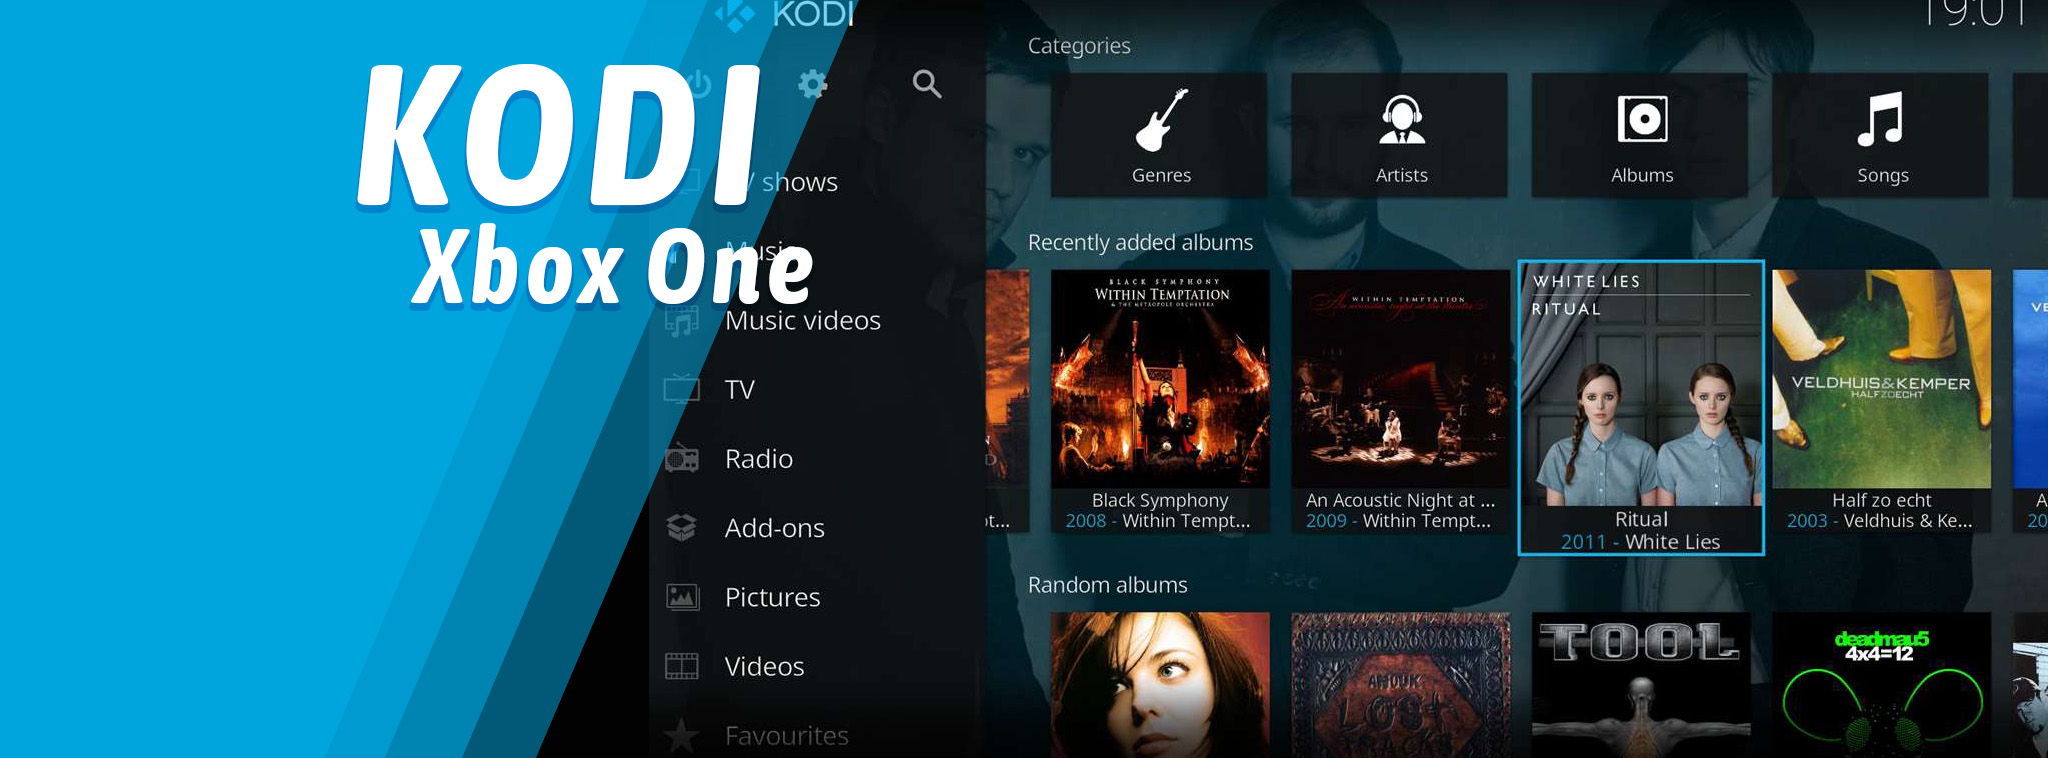 Đã có Kodi chính thức trên Xbox One